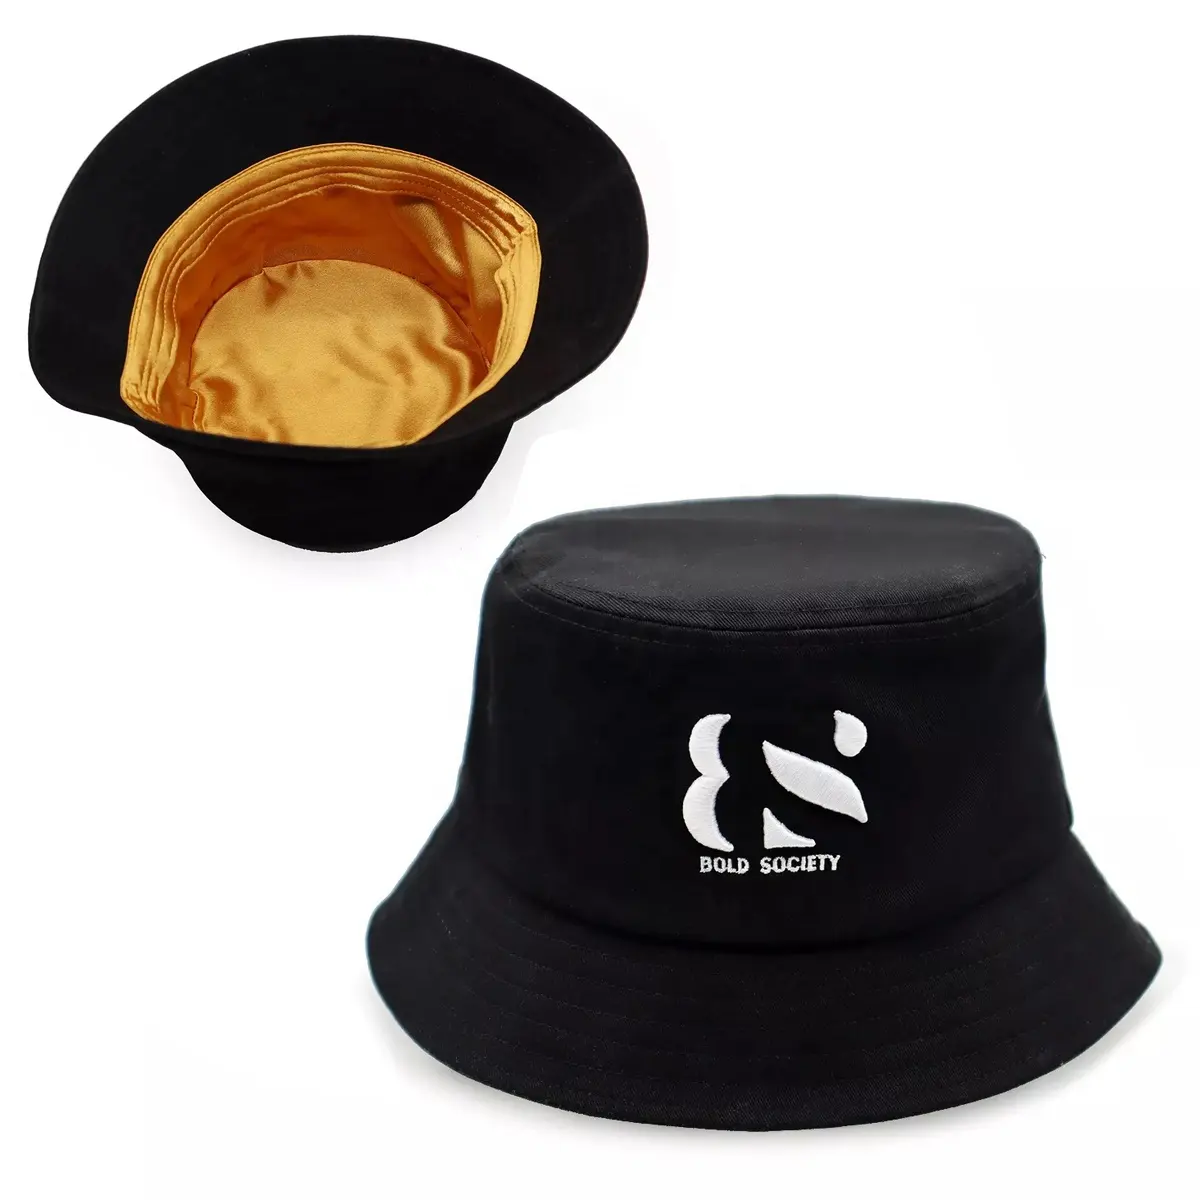 Chapeaux en satin noir, coréen, personnalisé, broderie 3d, 100% coton, doublure en soie brillante, chapeaux avec logo en satin